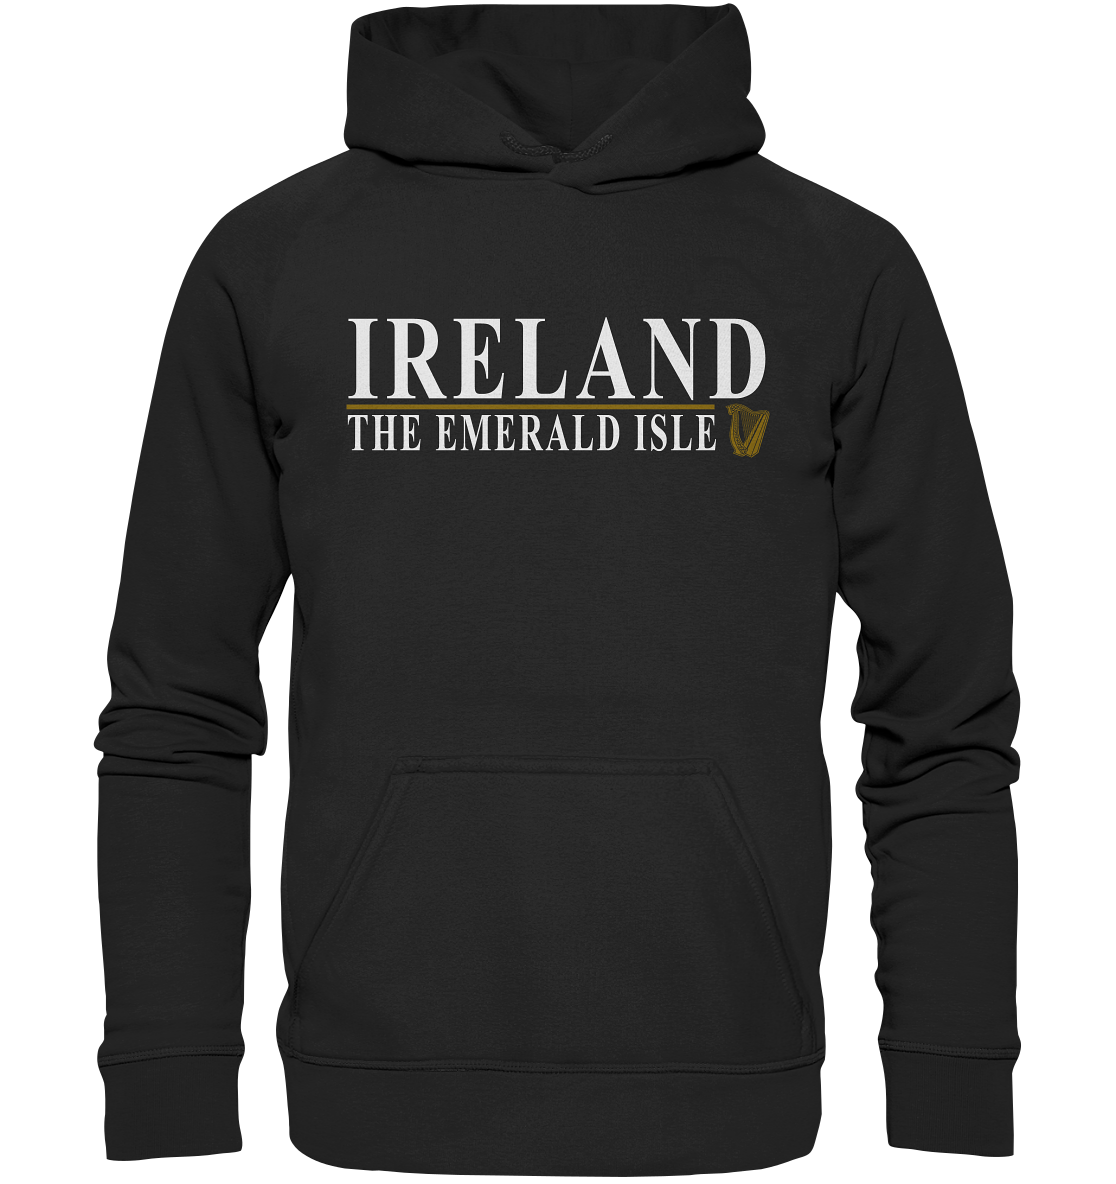 Ireland "The Emerald Isle" - Basic Unisex Hoodie